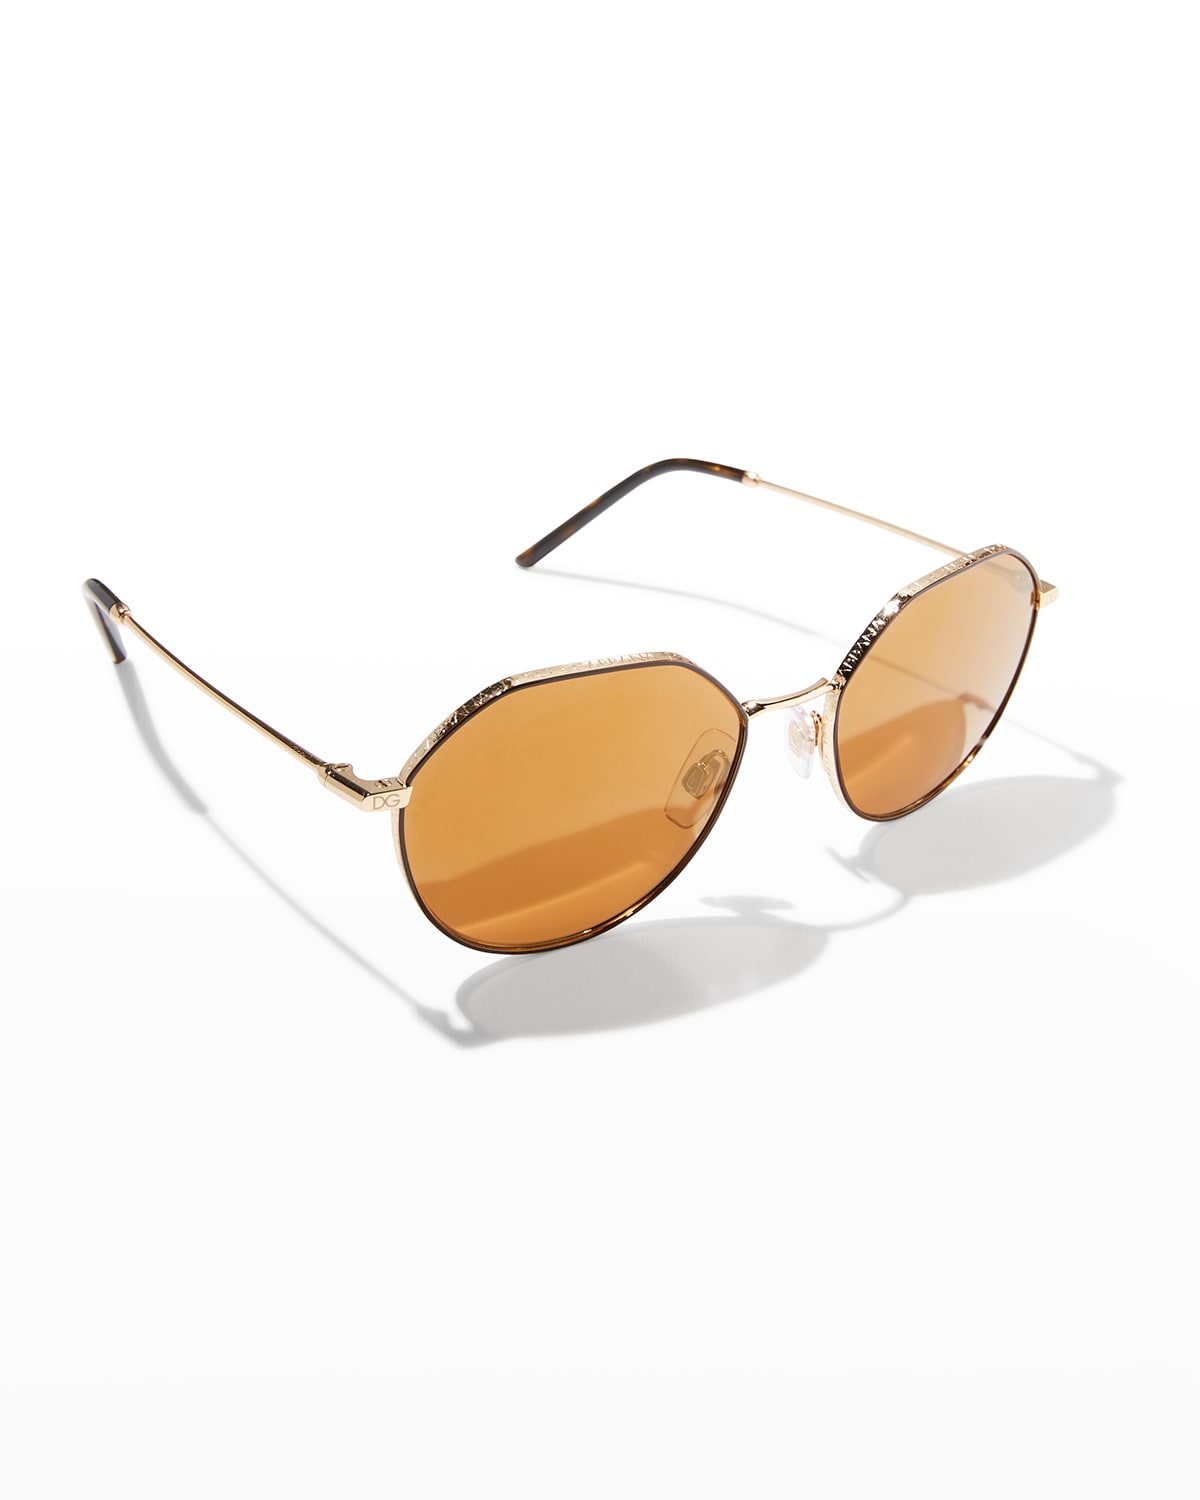 Men's Gold-Tone Metal Round Sunglasses